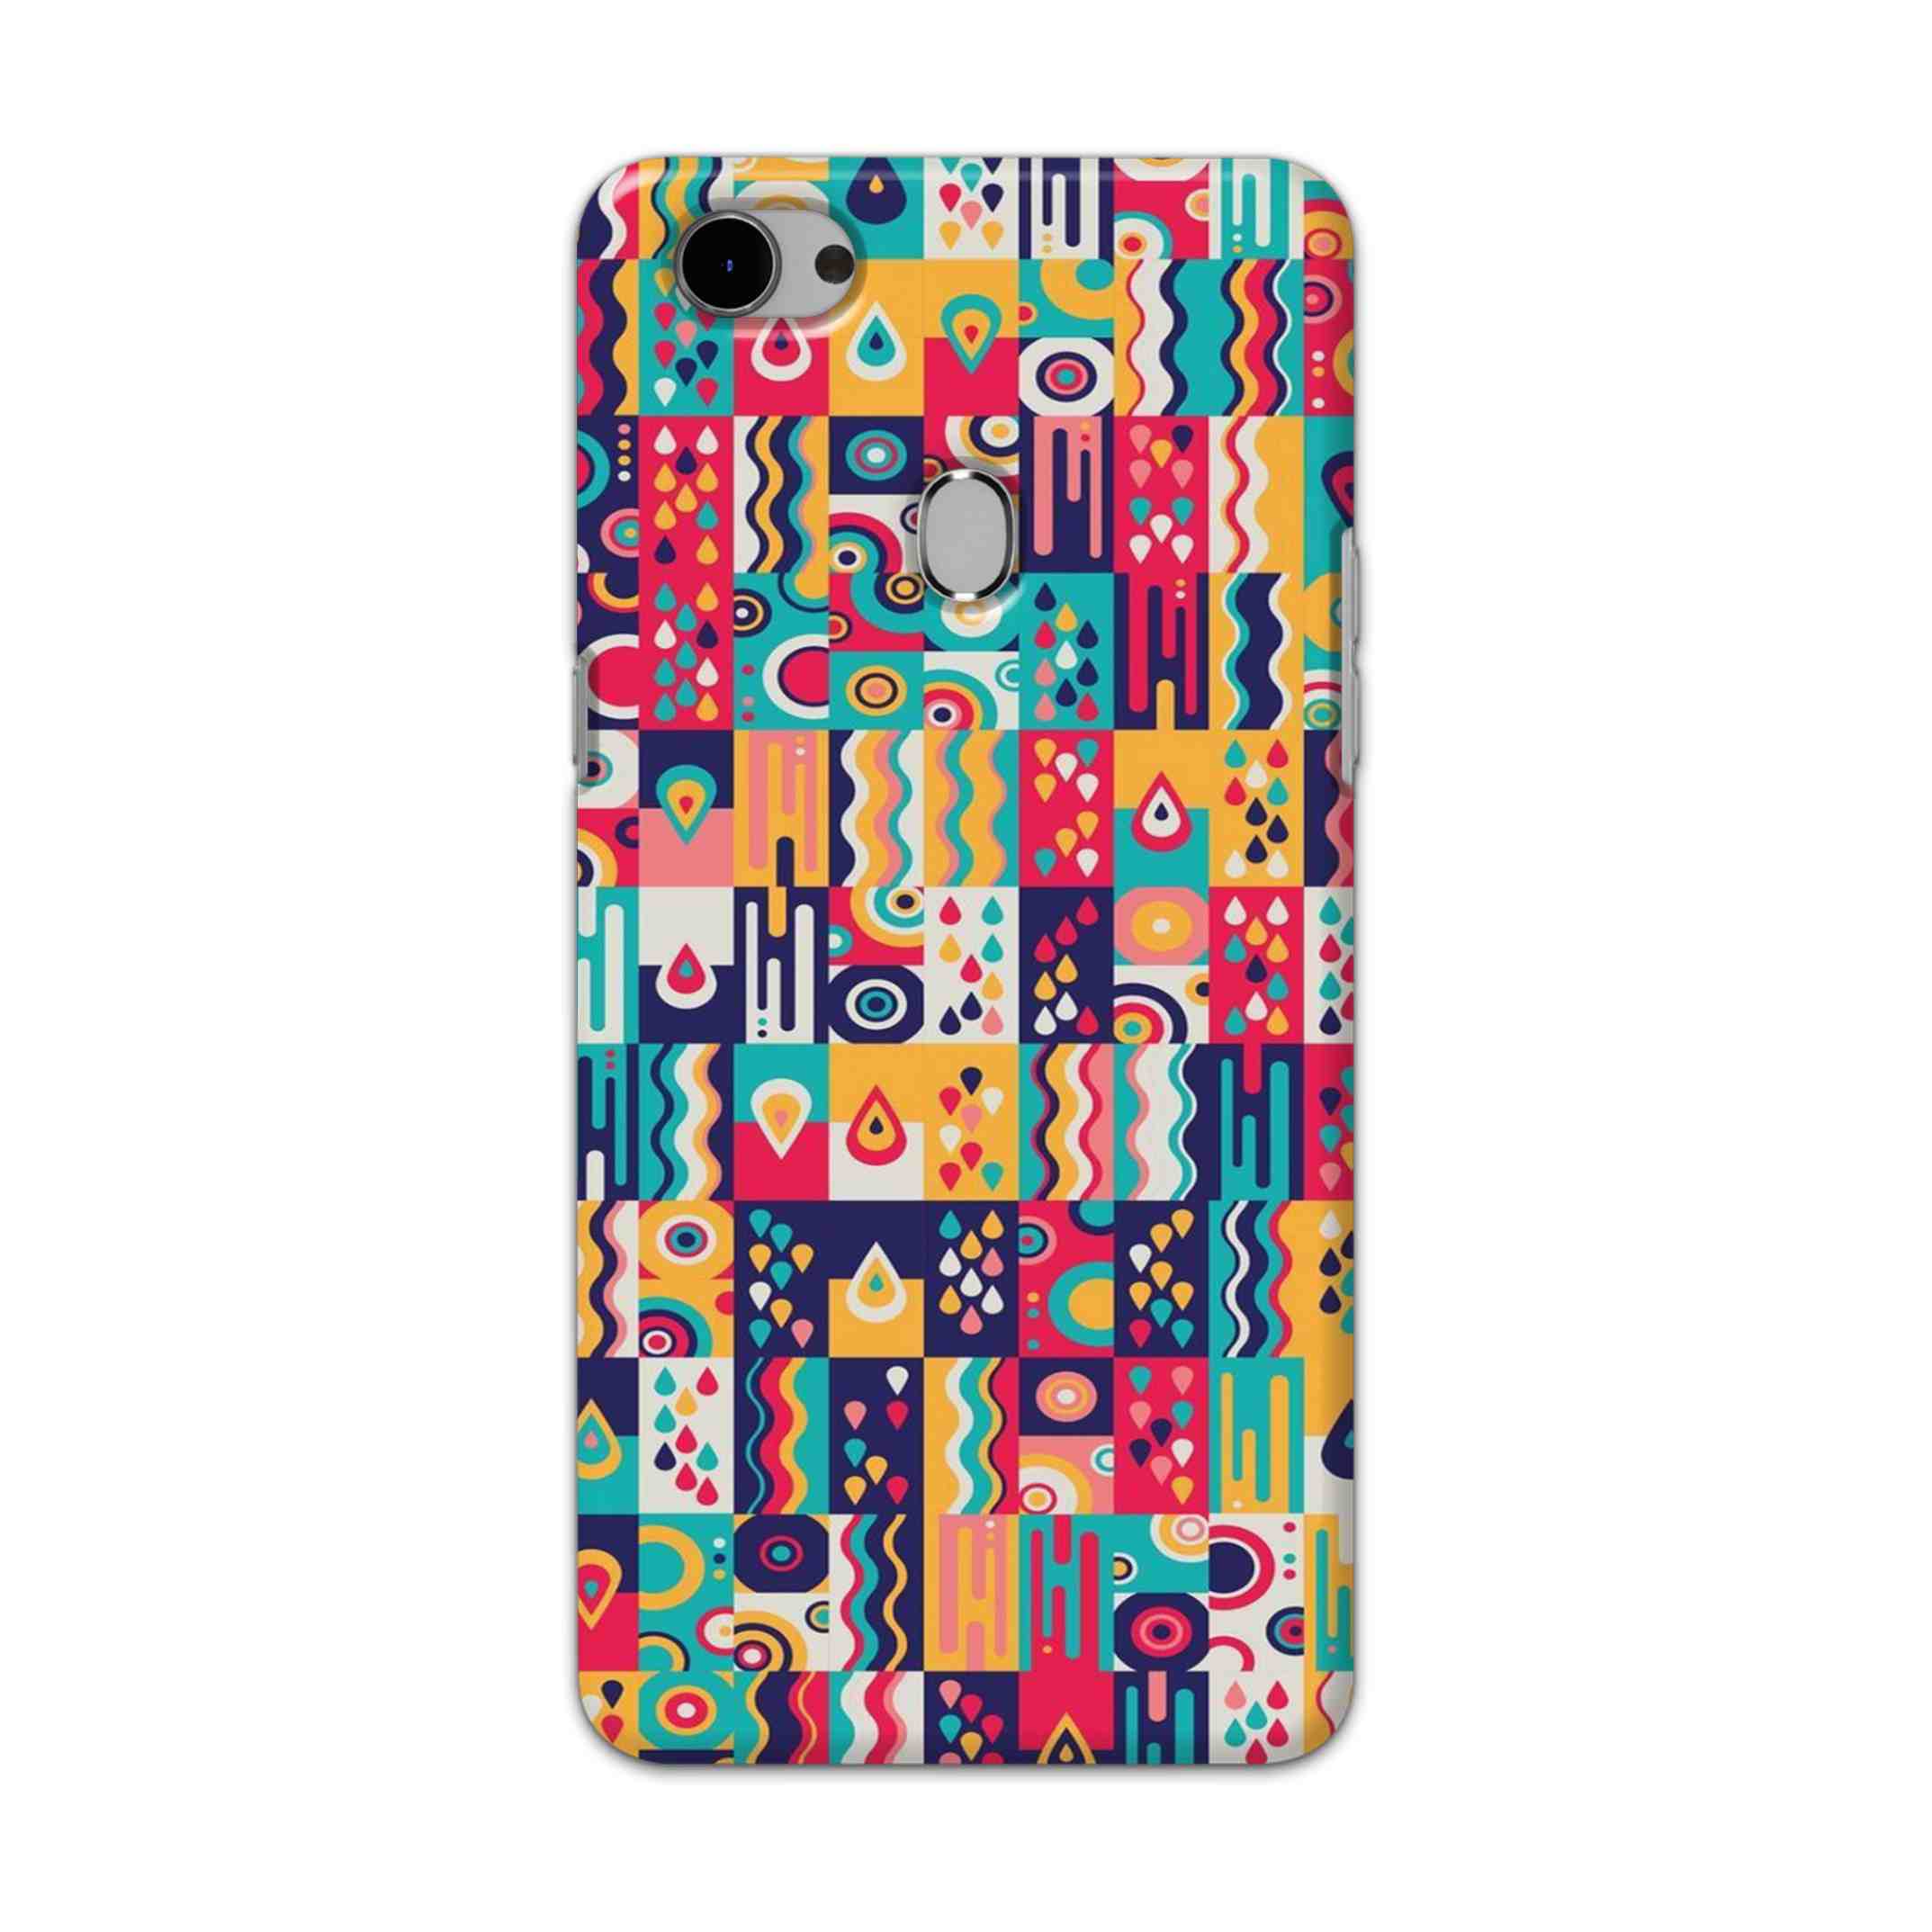 Buy Art Hard Back Mobile Phone Case Cover For Oppo F7 Online